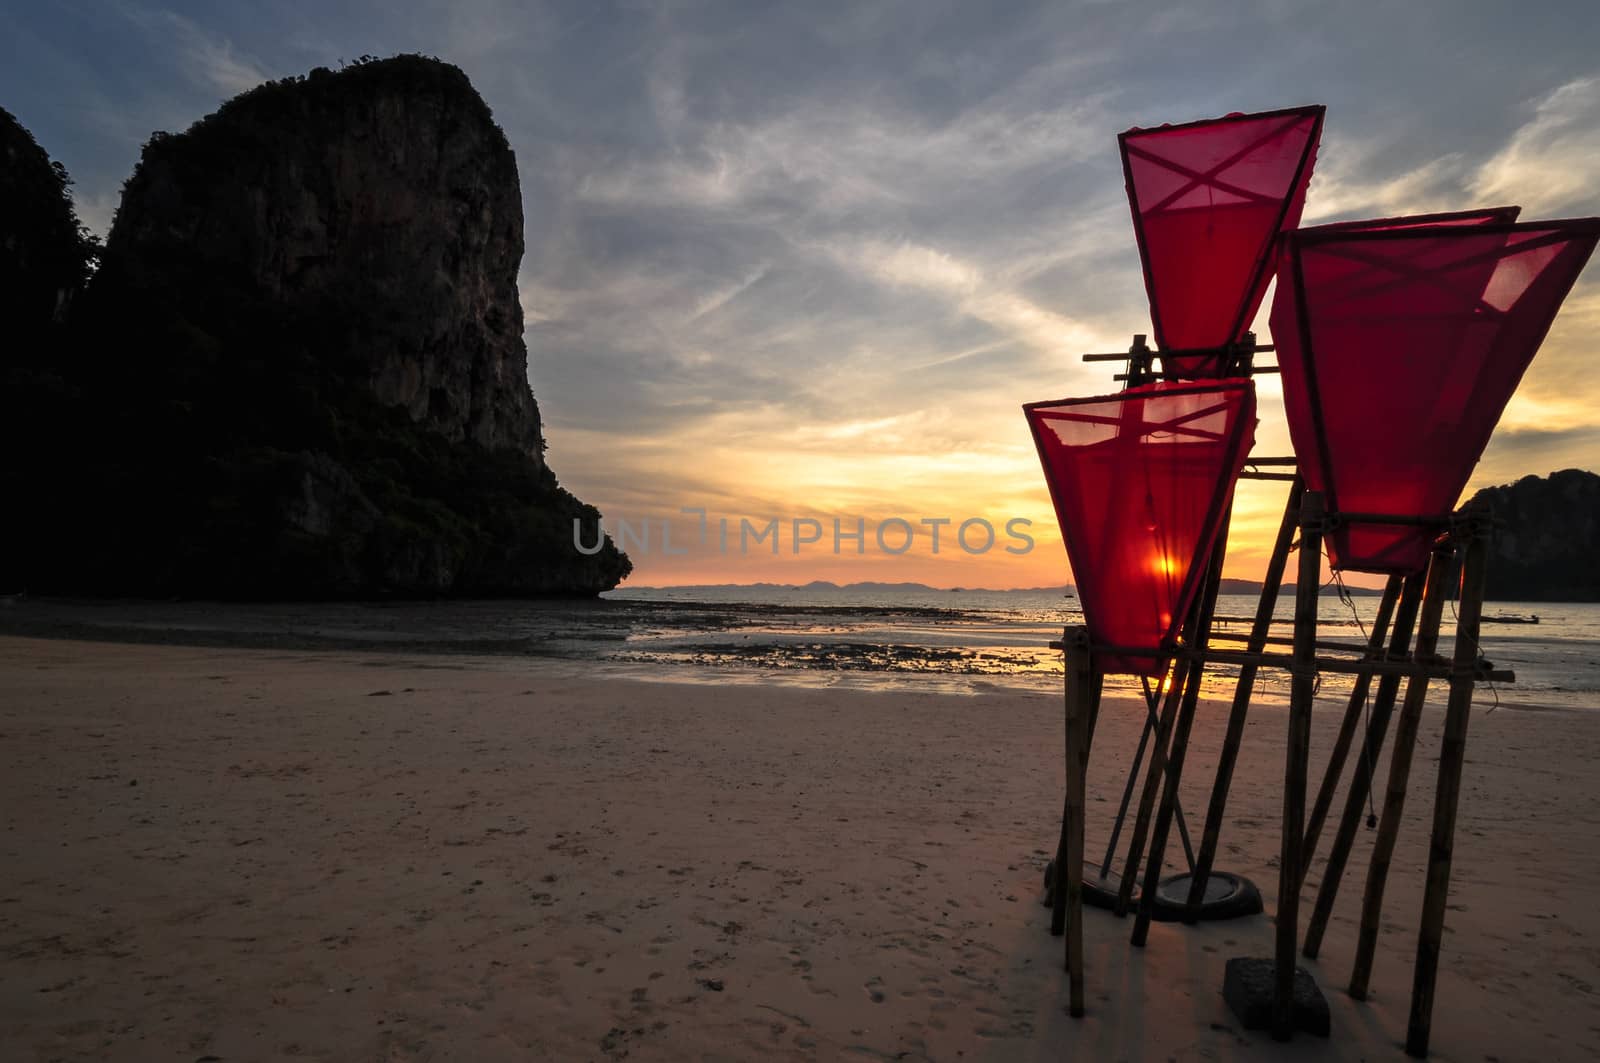 Railay beach sunset in Krabi Thailand by weltreisendertj